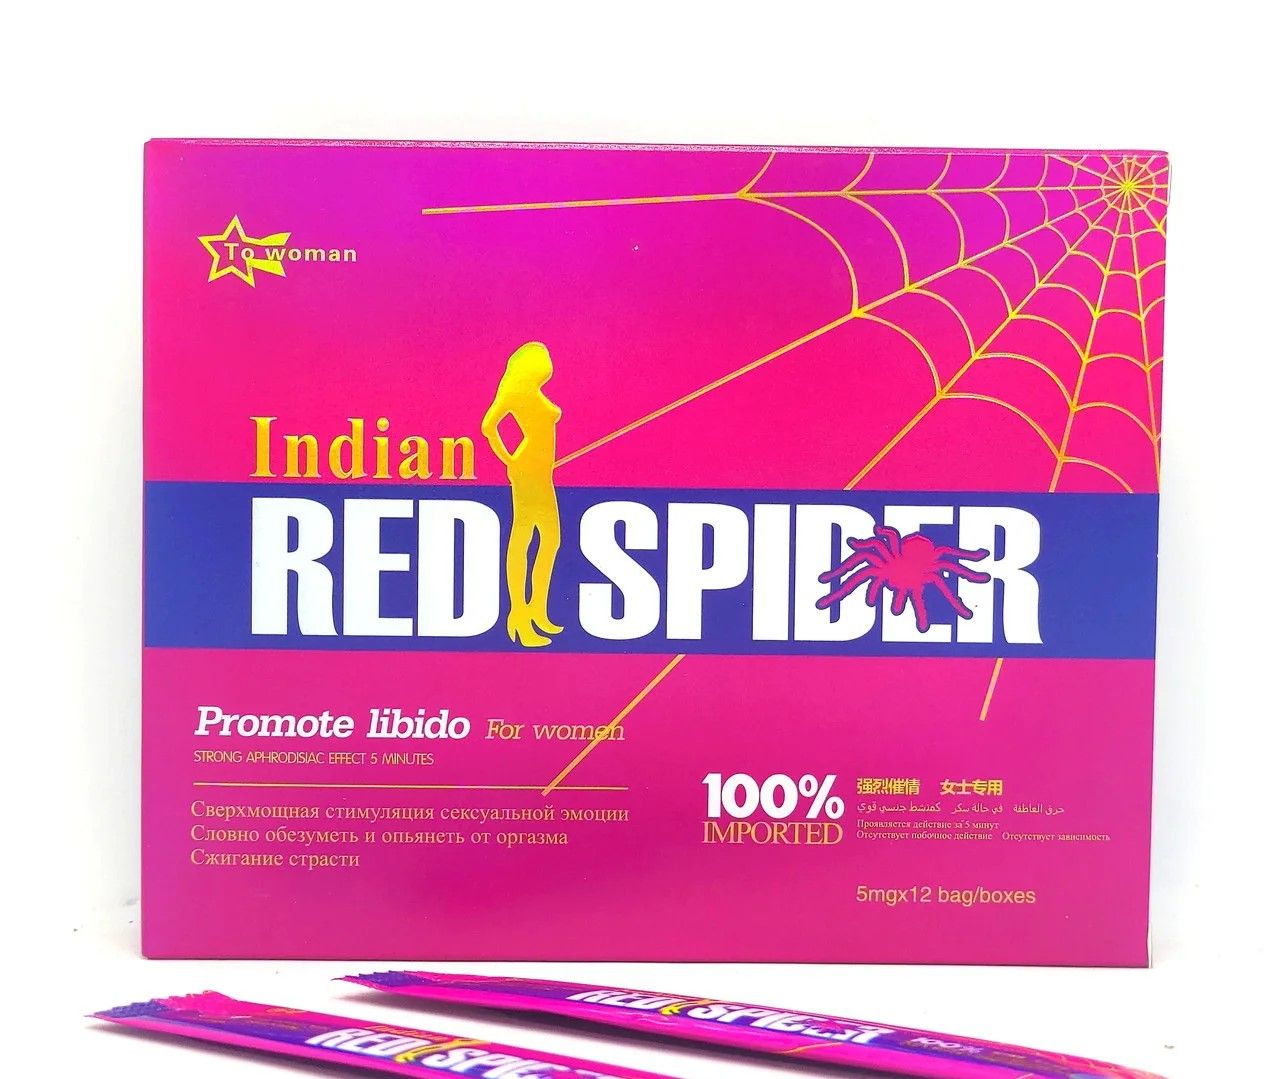 Ред спайдер. Red Spider женский возбудитель. Капли возбудитель Red Spider. Red Spider женский возбудитель капли. Indian Red Spider женский возбудитель.